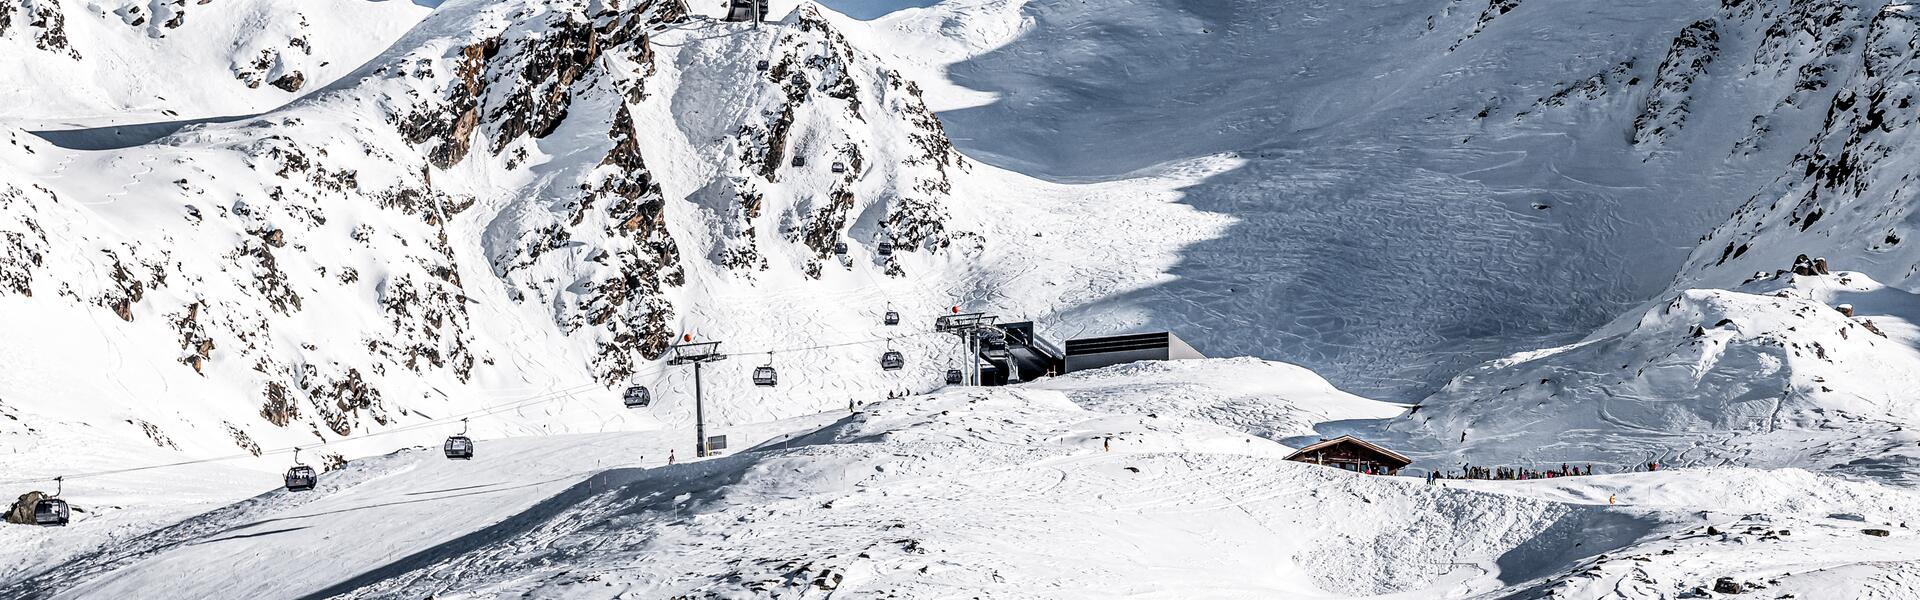 cable cars obergurgl skiing area | © Alexander Maria Lohmann